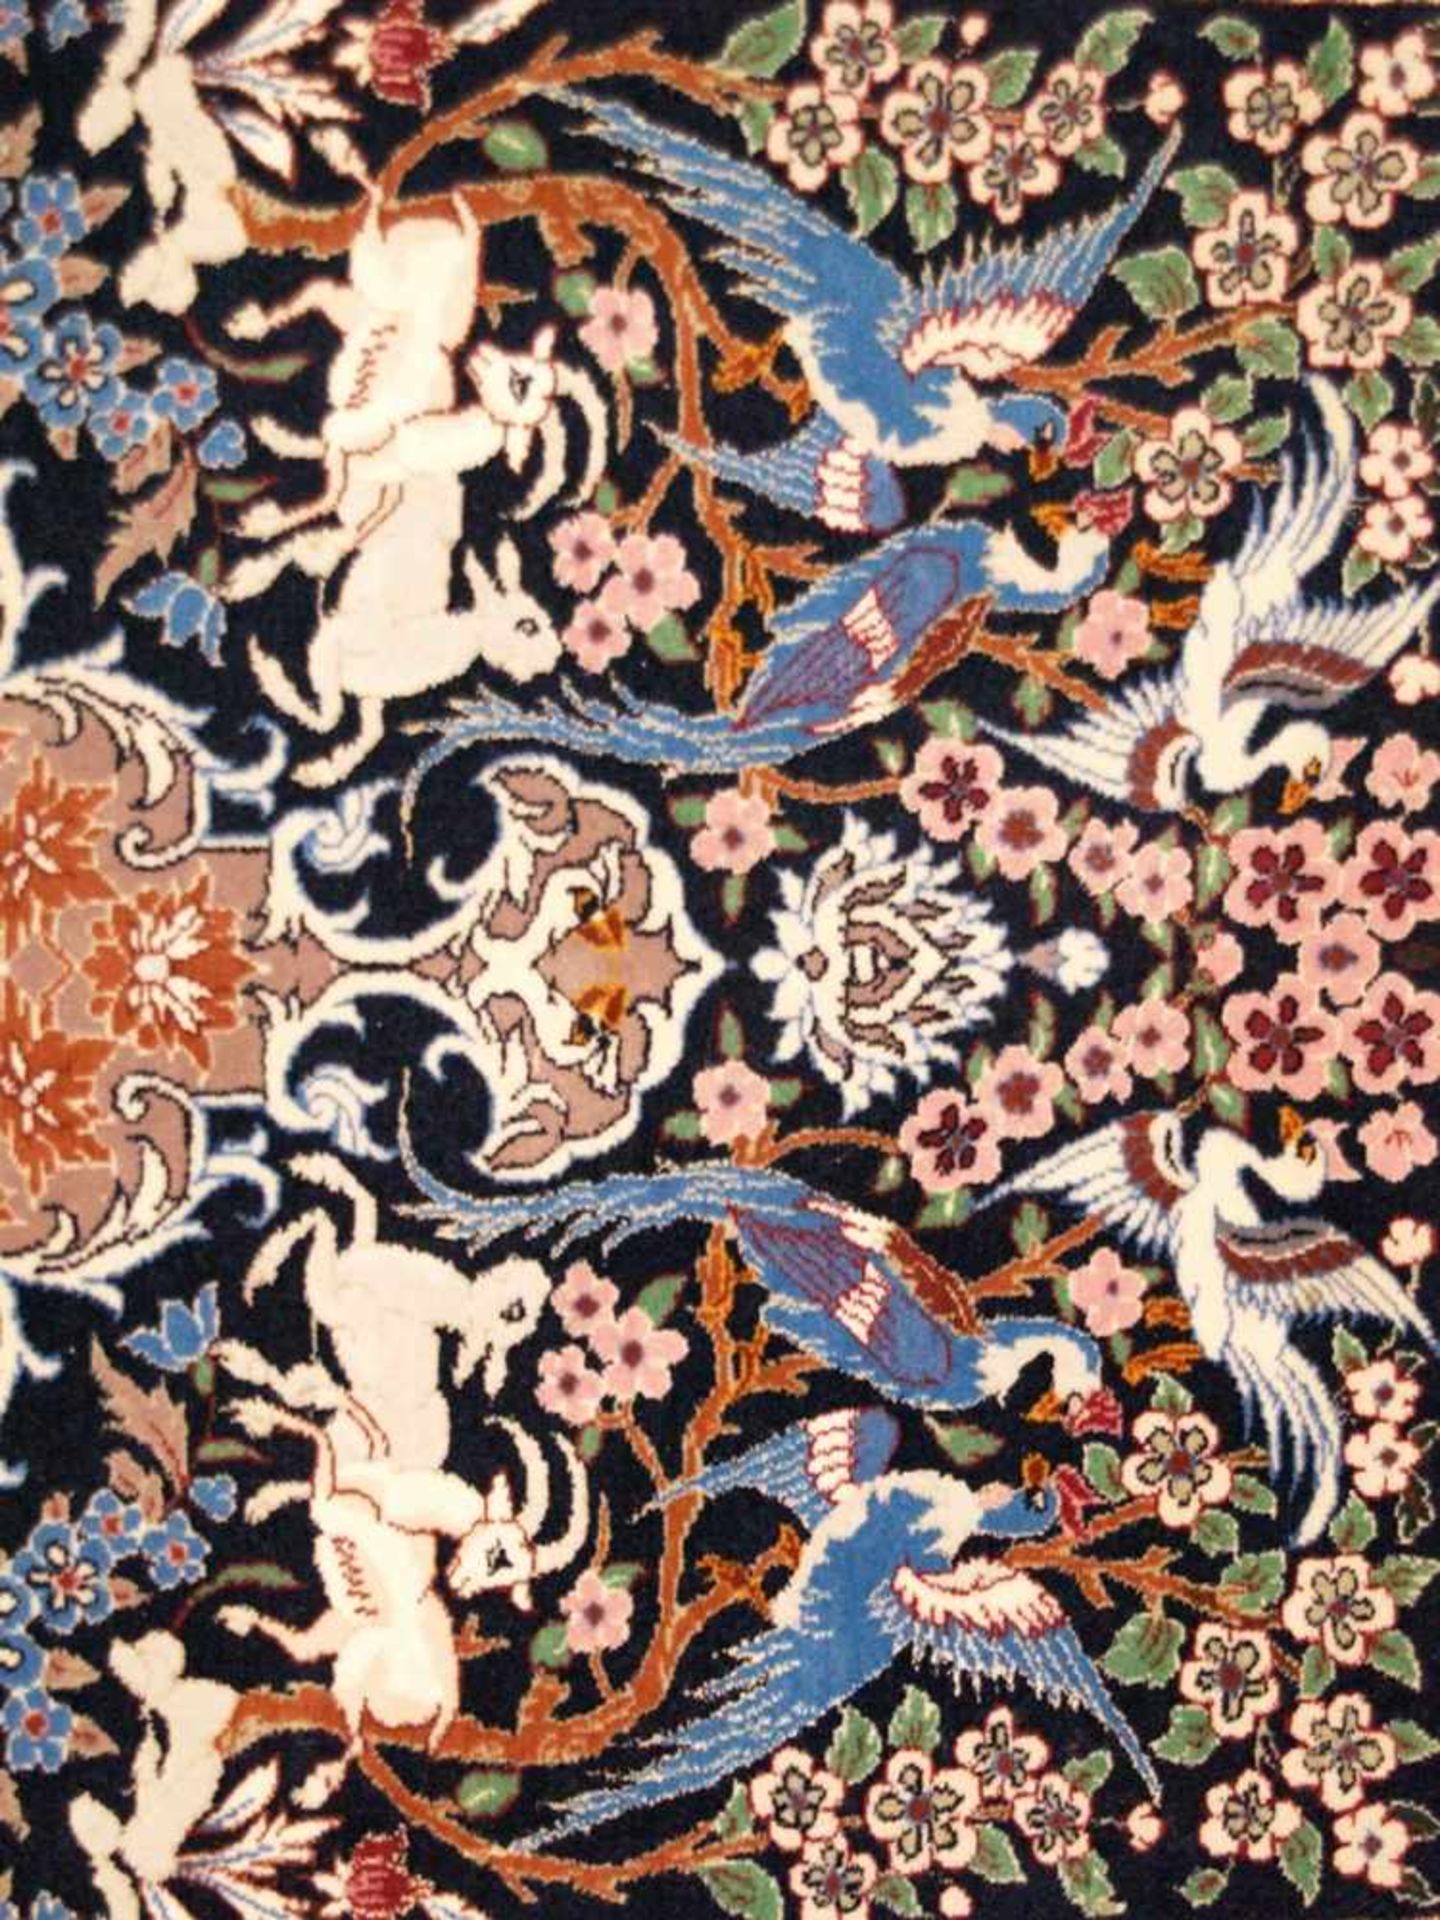 Orientteppich - Wolle und Seide, blaugrundig, zentrale florale Kartusche, gerahmt von Vögeln, - Bild 3 aus 11